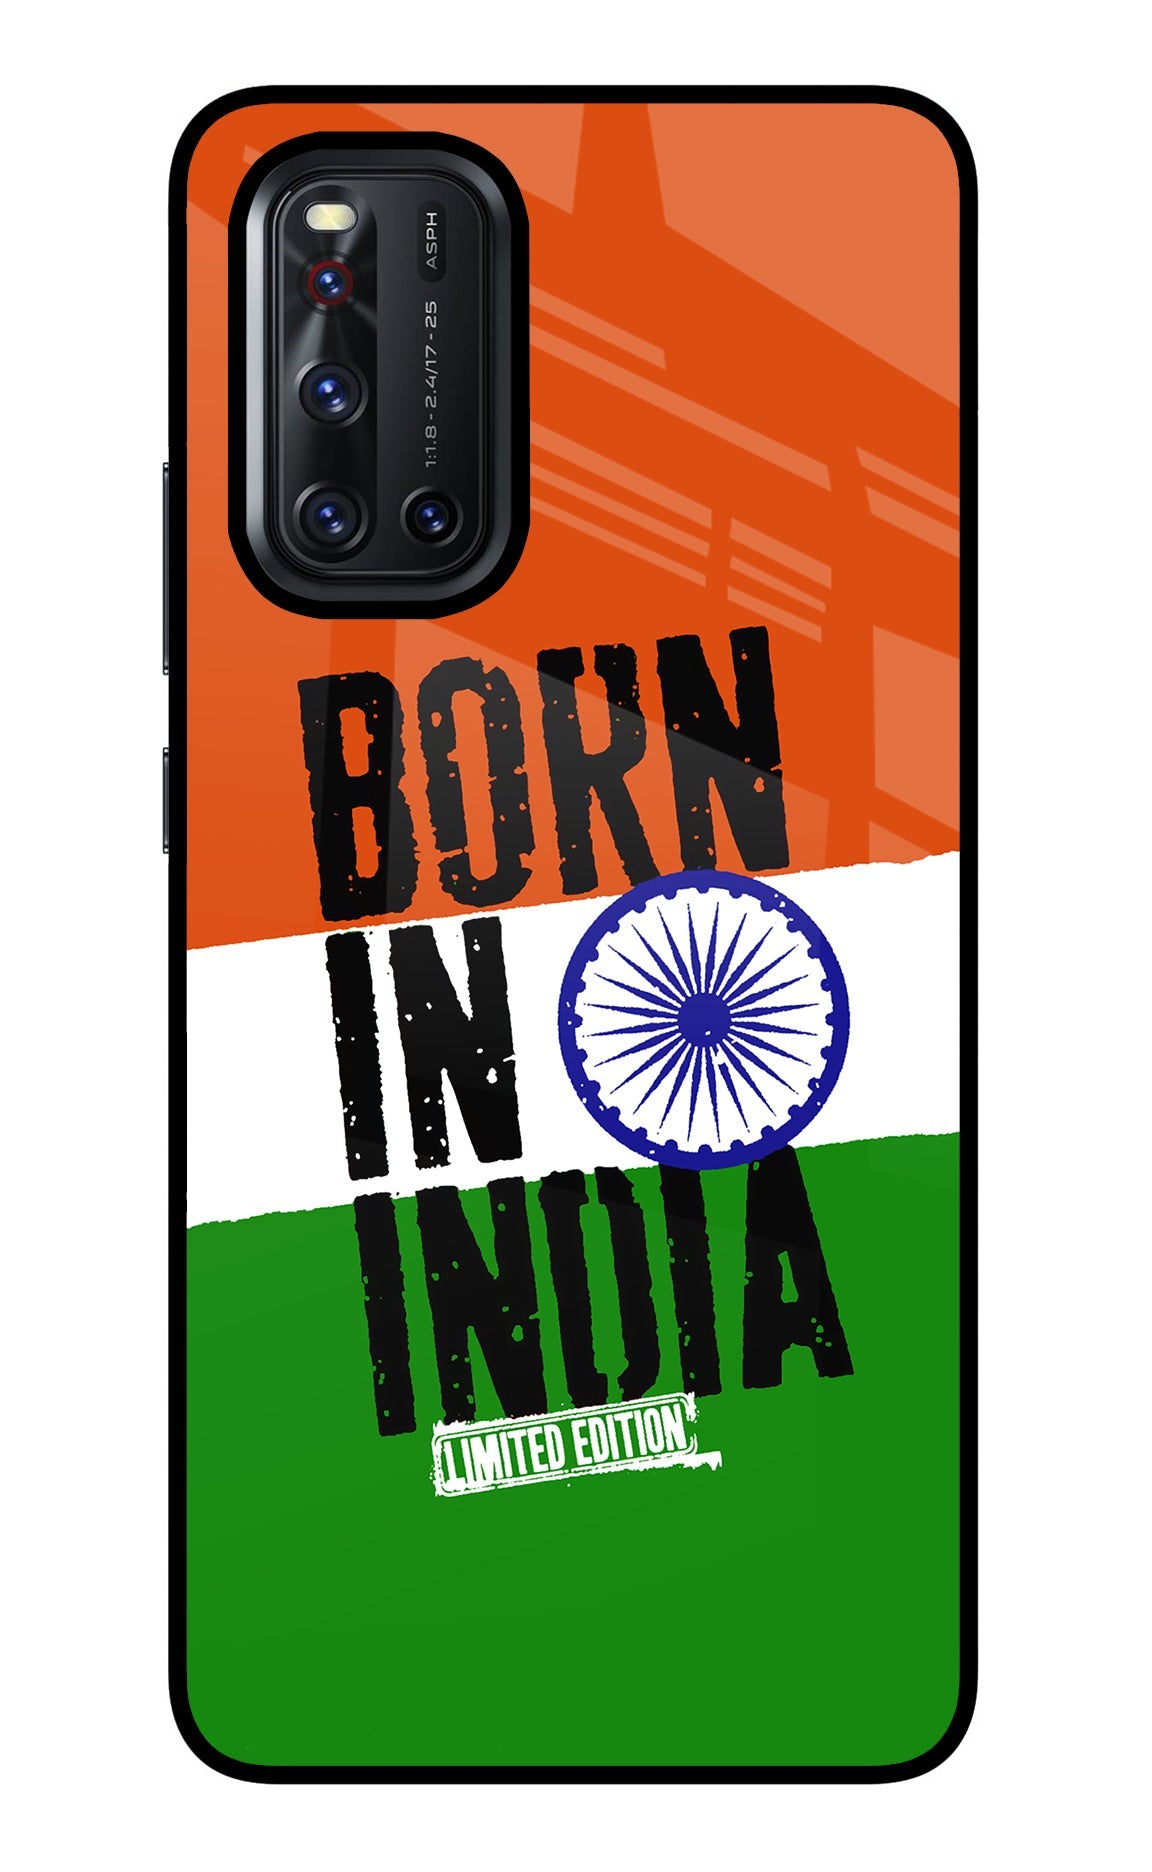 Born in India Vivo V19 Glass Case